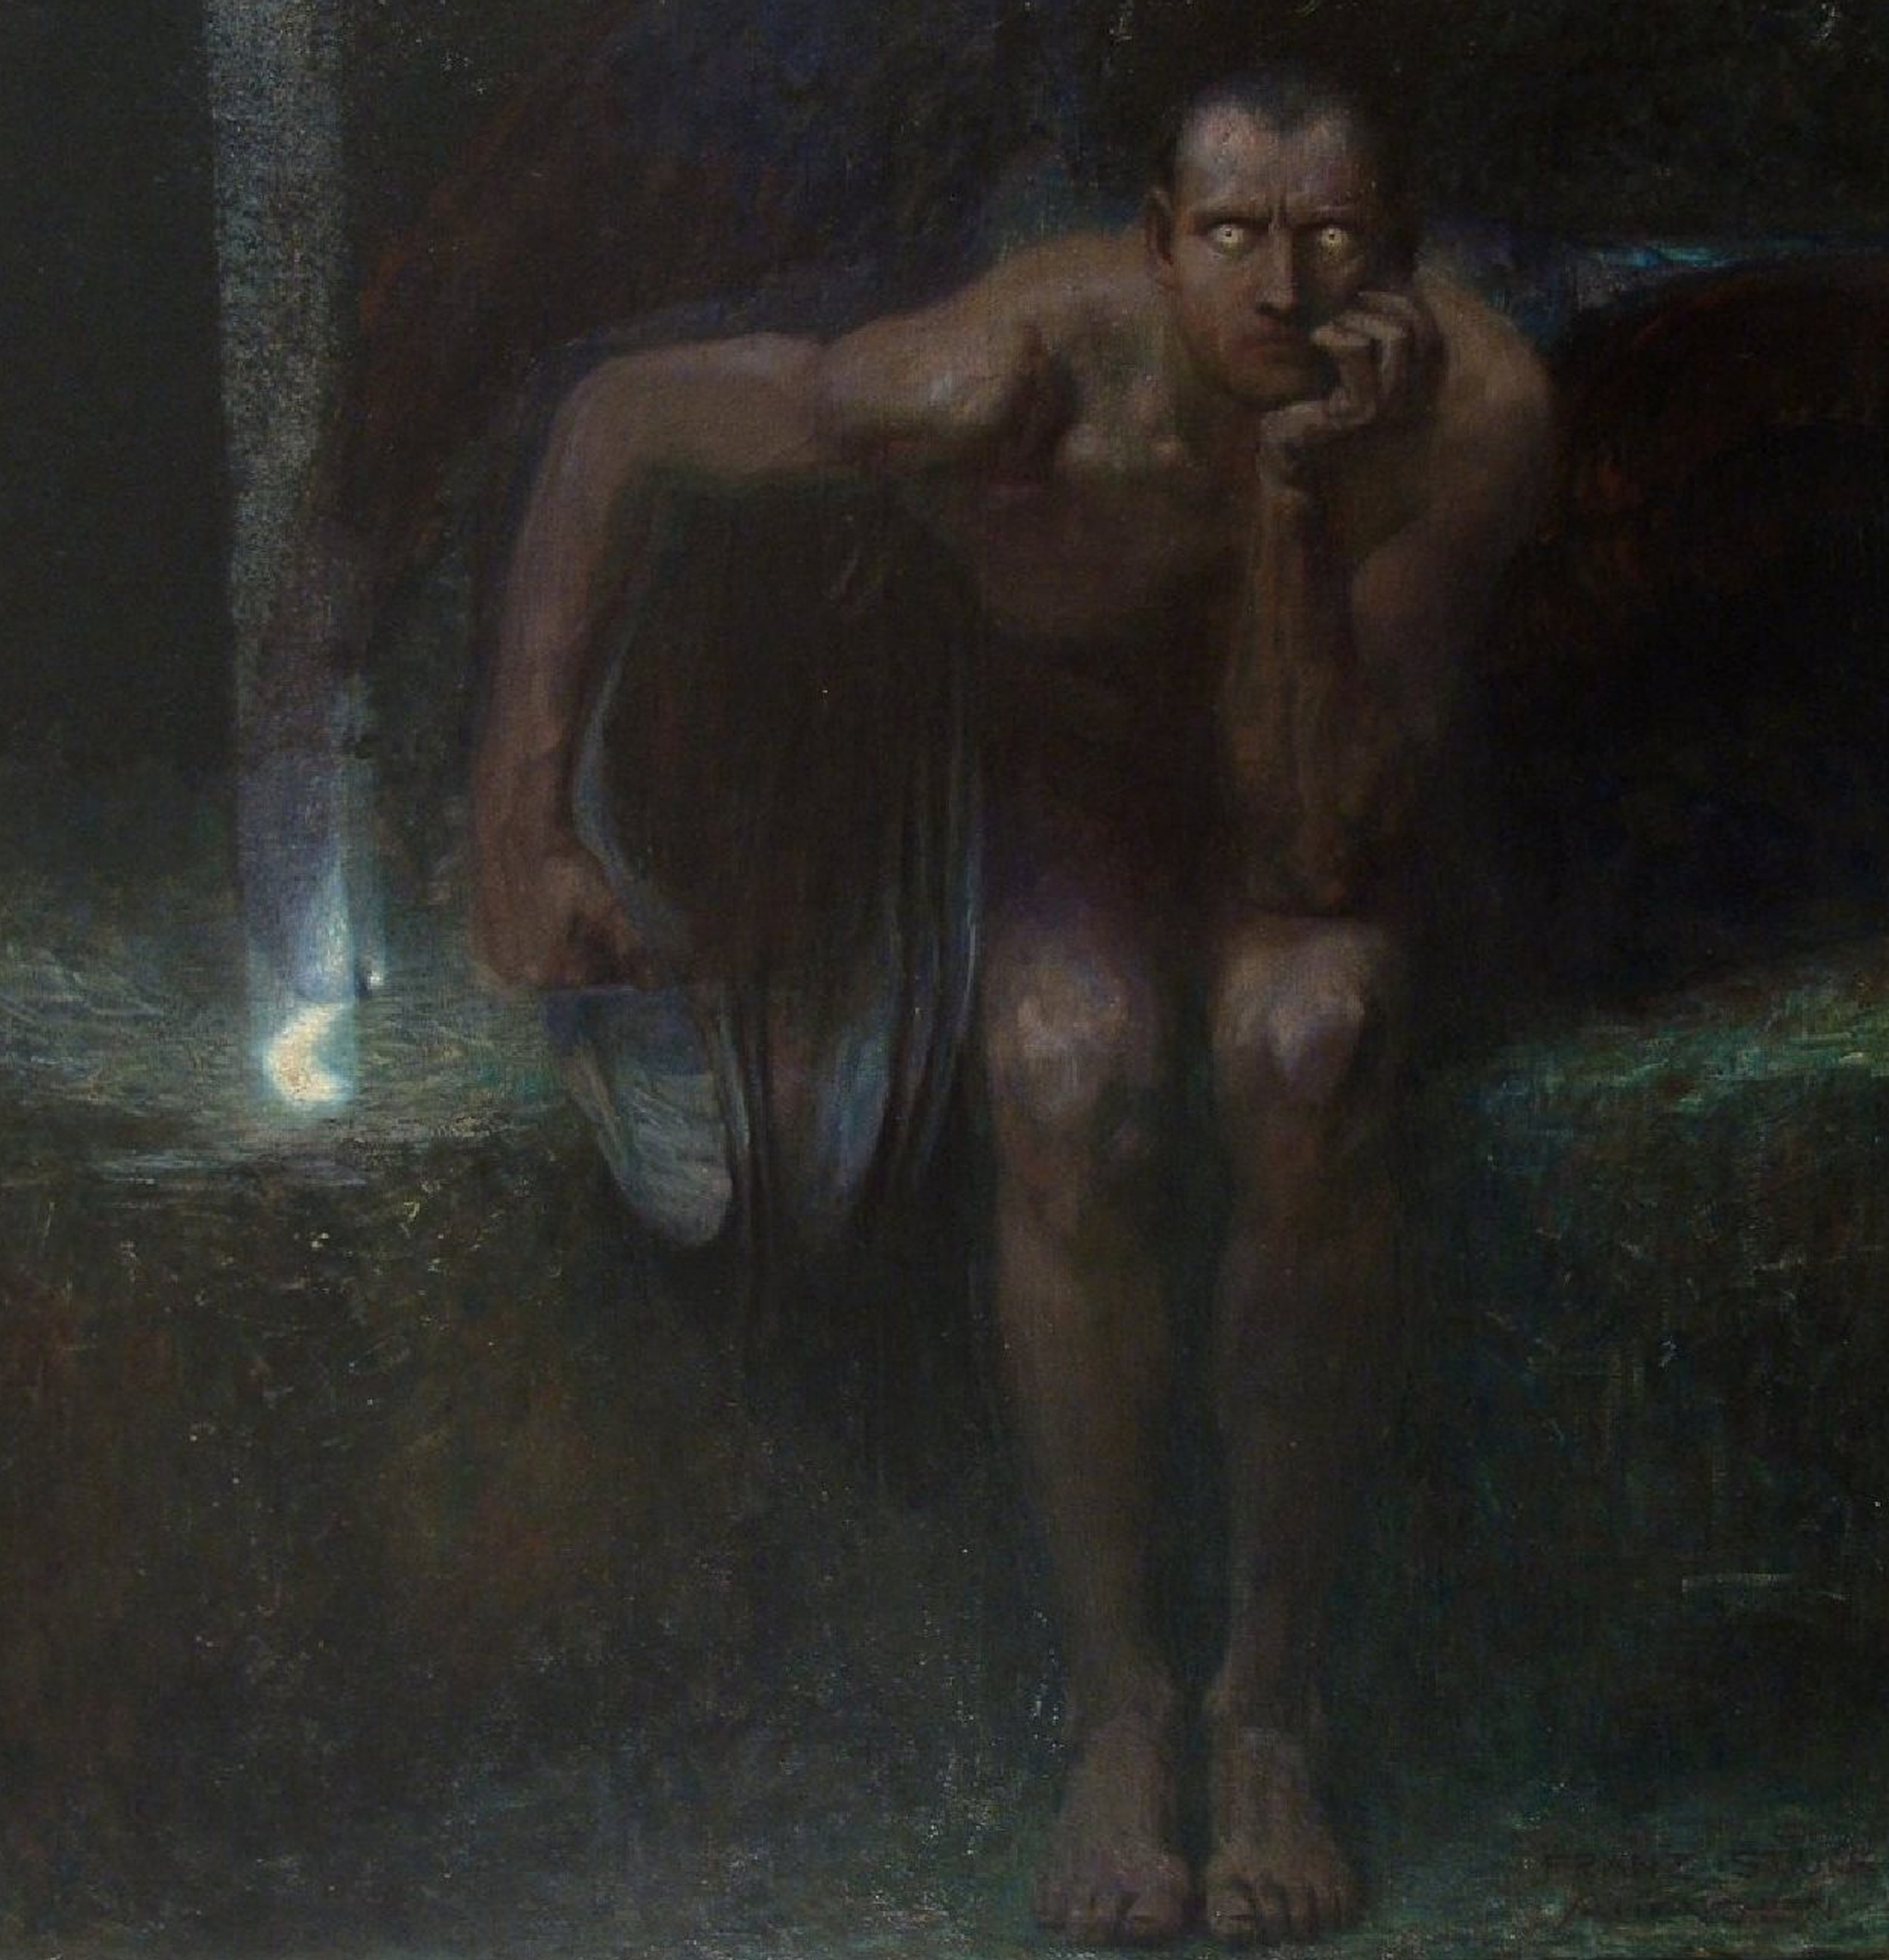 Lucifer by Franz von Stuck - 1890 